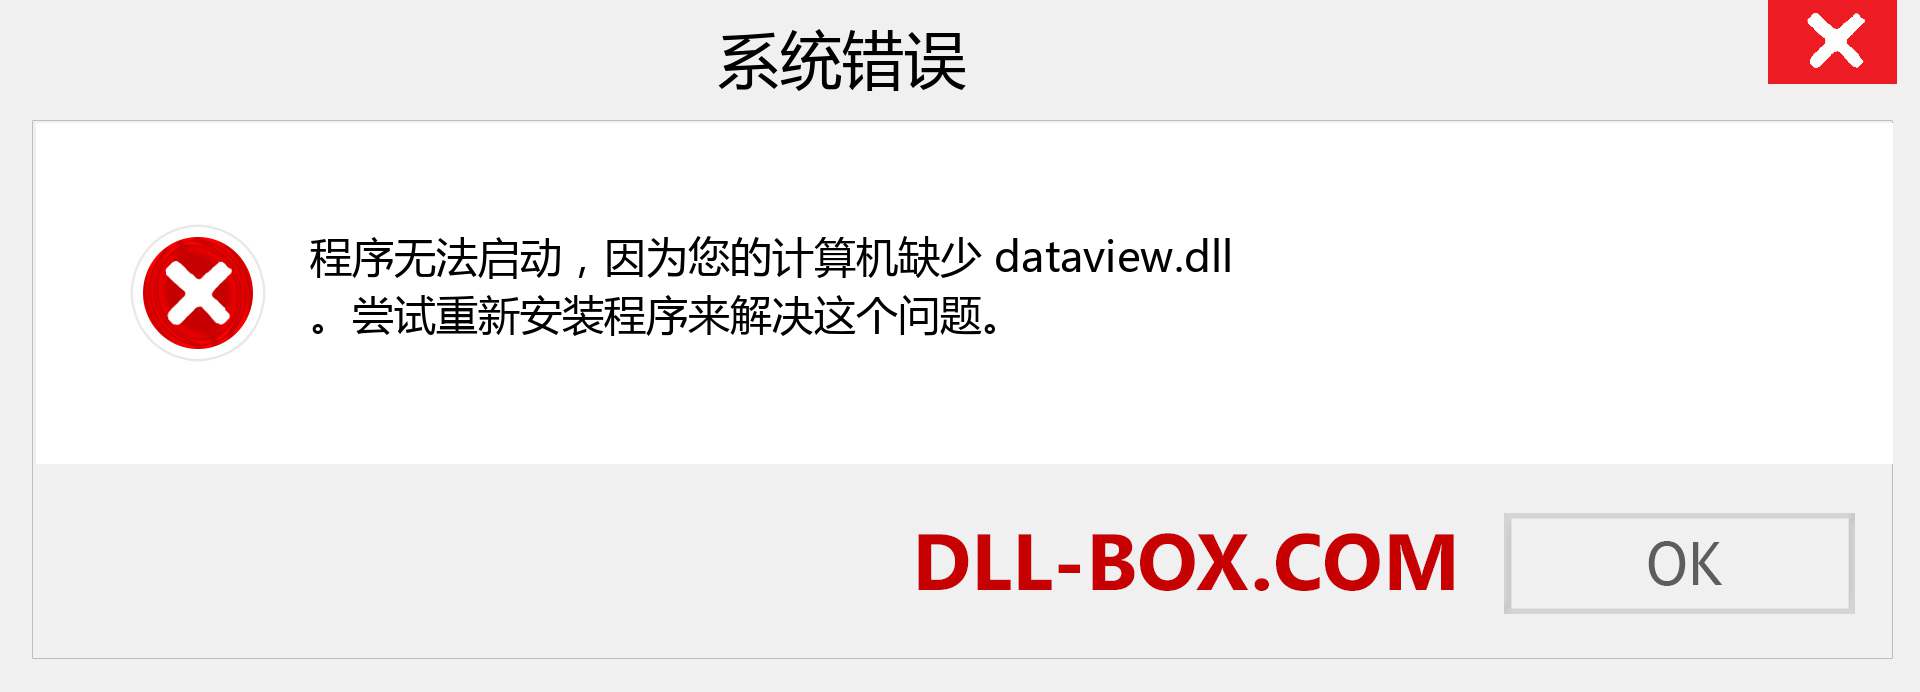 dataview.dll 文件丢失？。 适用于 Windows 7、8、10 的下载 - 修复 Windows、照片、图像上的 dataview dll 丢失错误